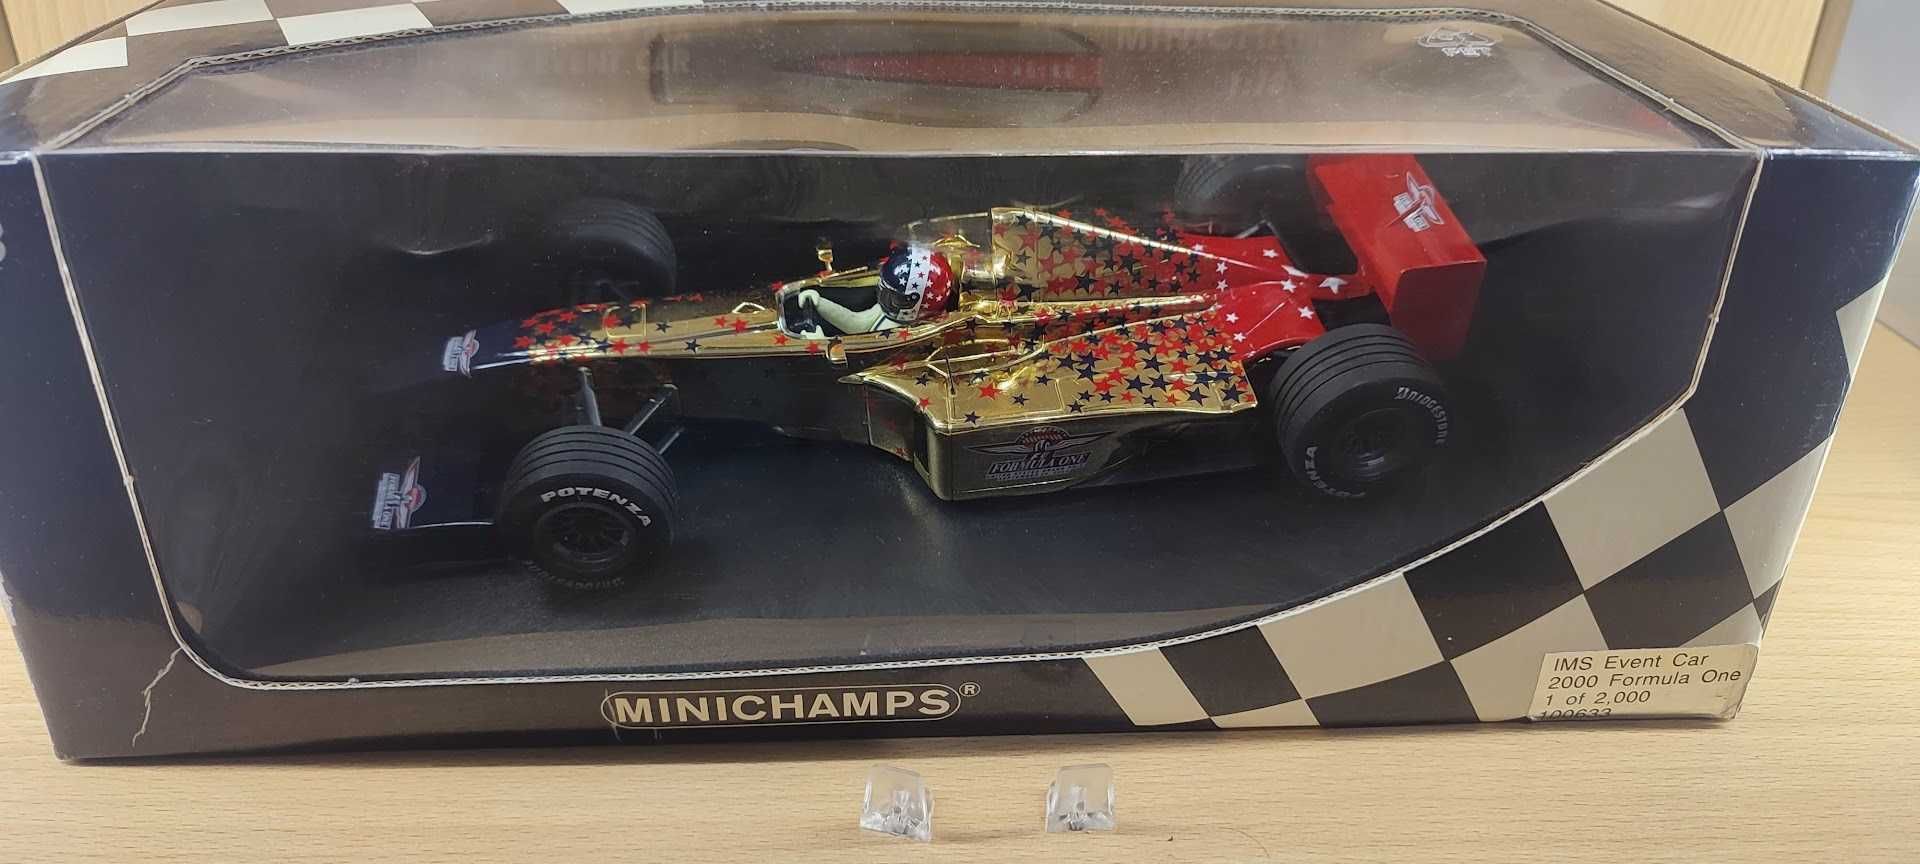 Formula 1 Колекция - Ferrari 2000 U.S. GP Minichamps 1/18